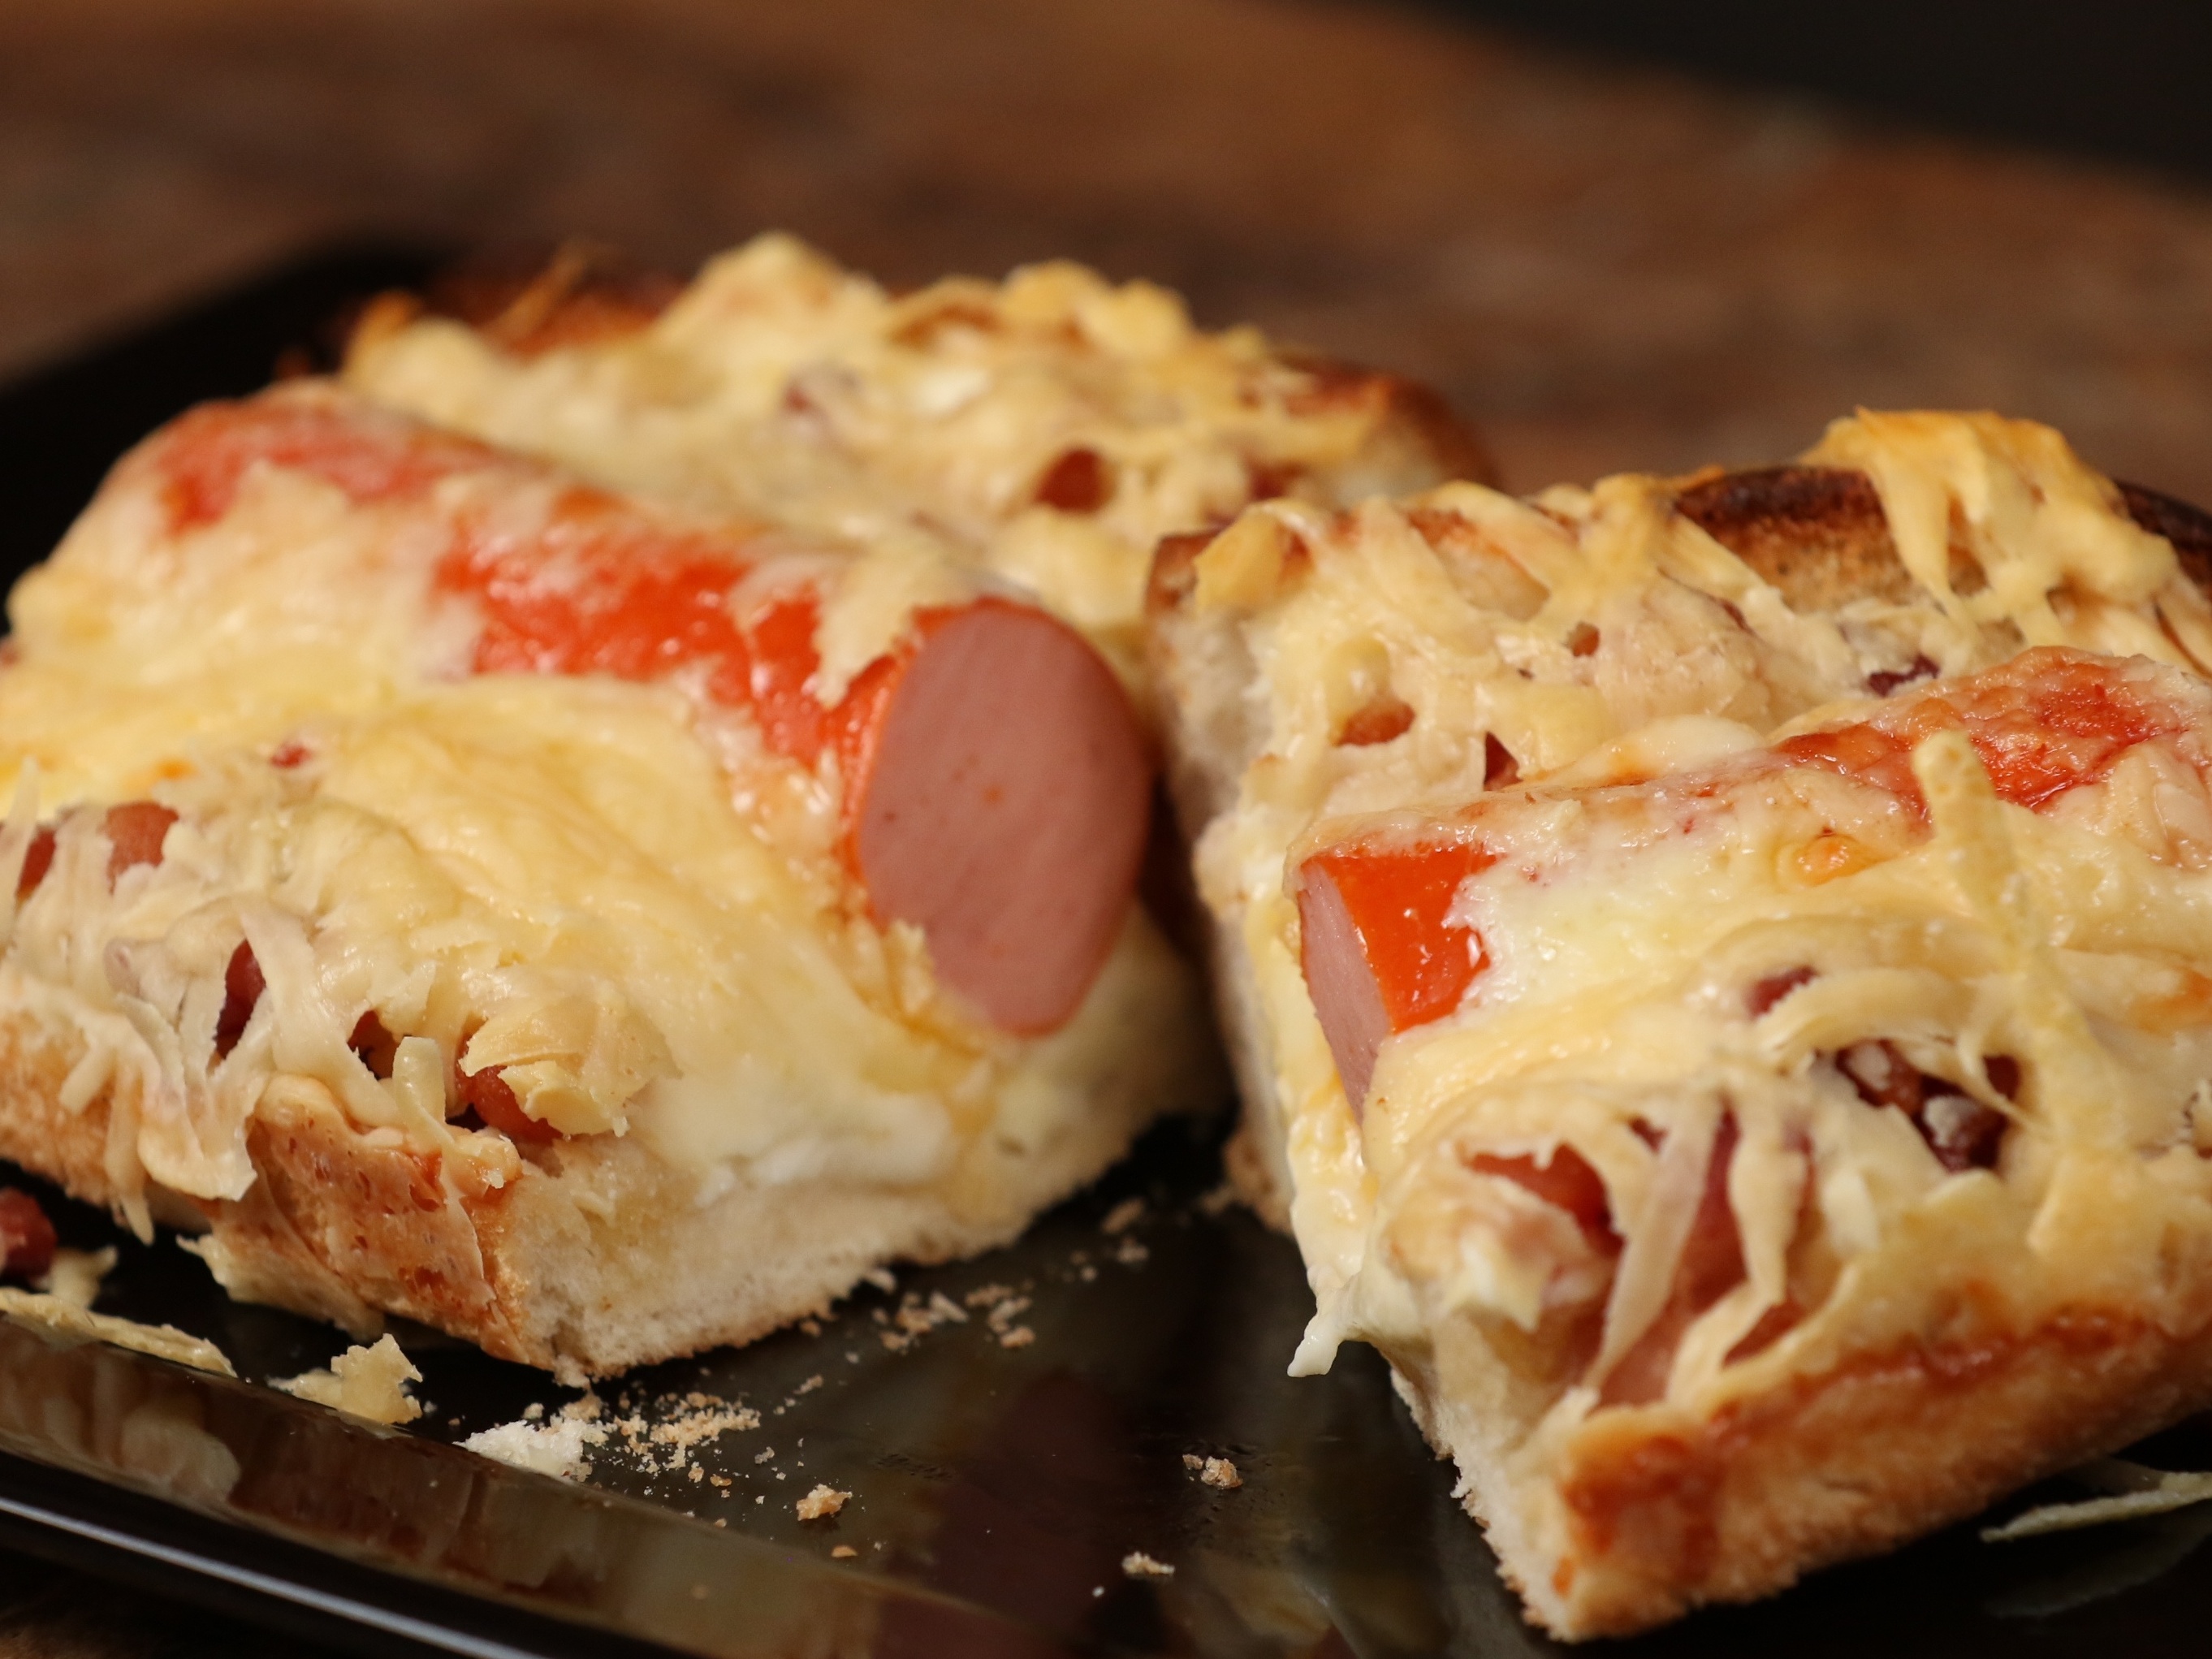 Hot Dog na Canoa, ao forno e delicioso! - Monta Encanta